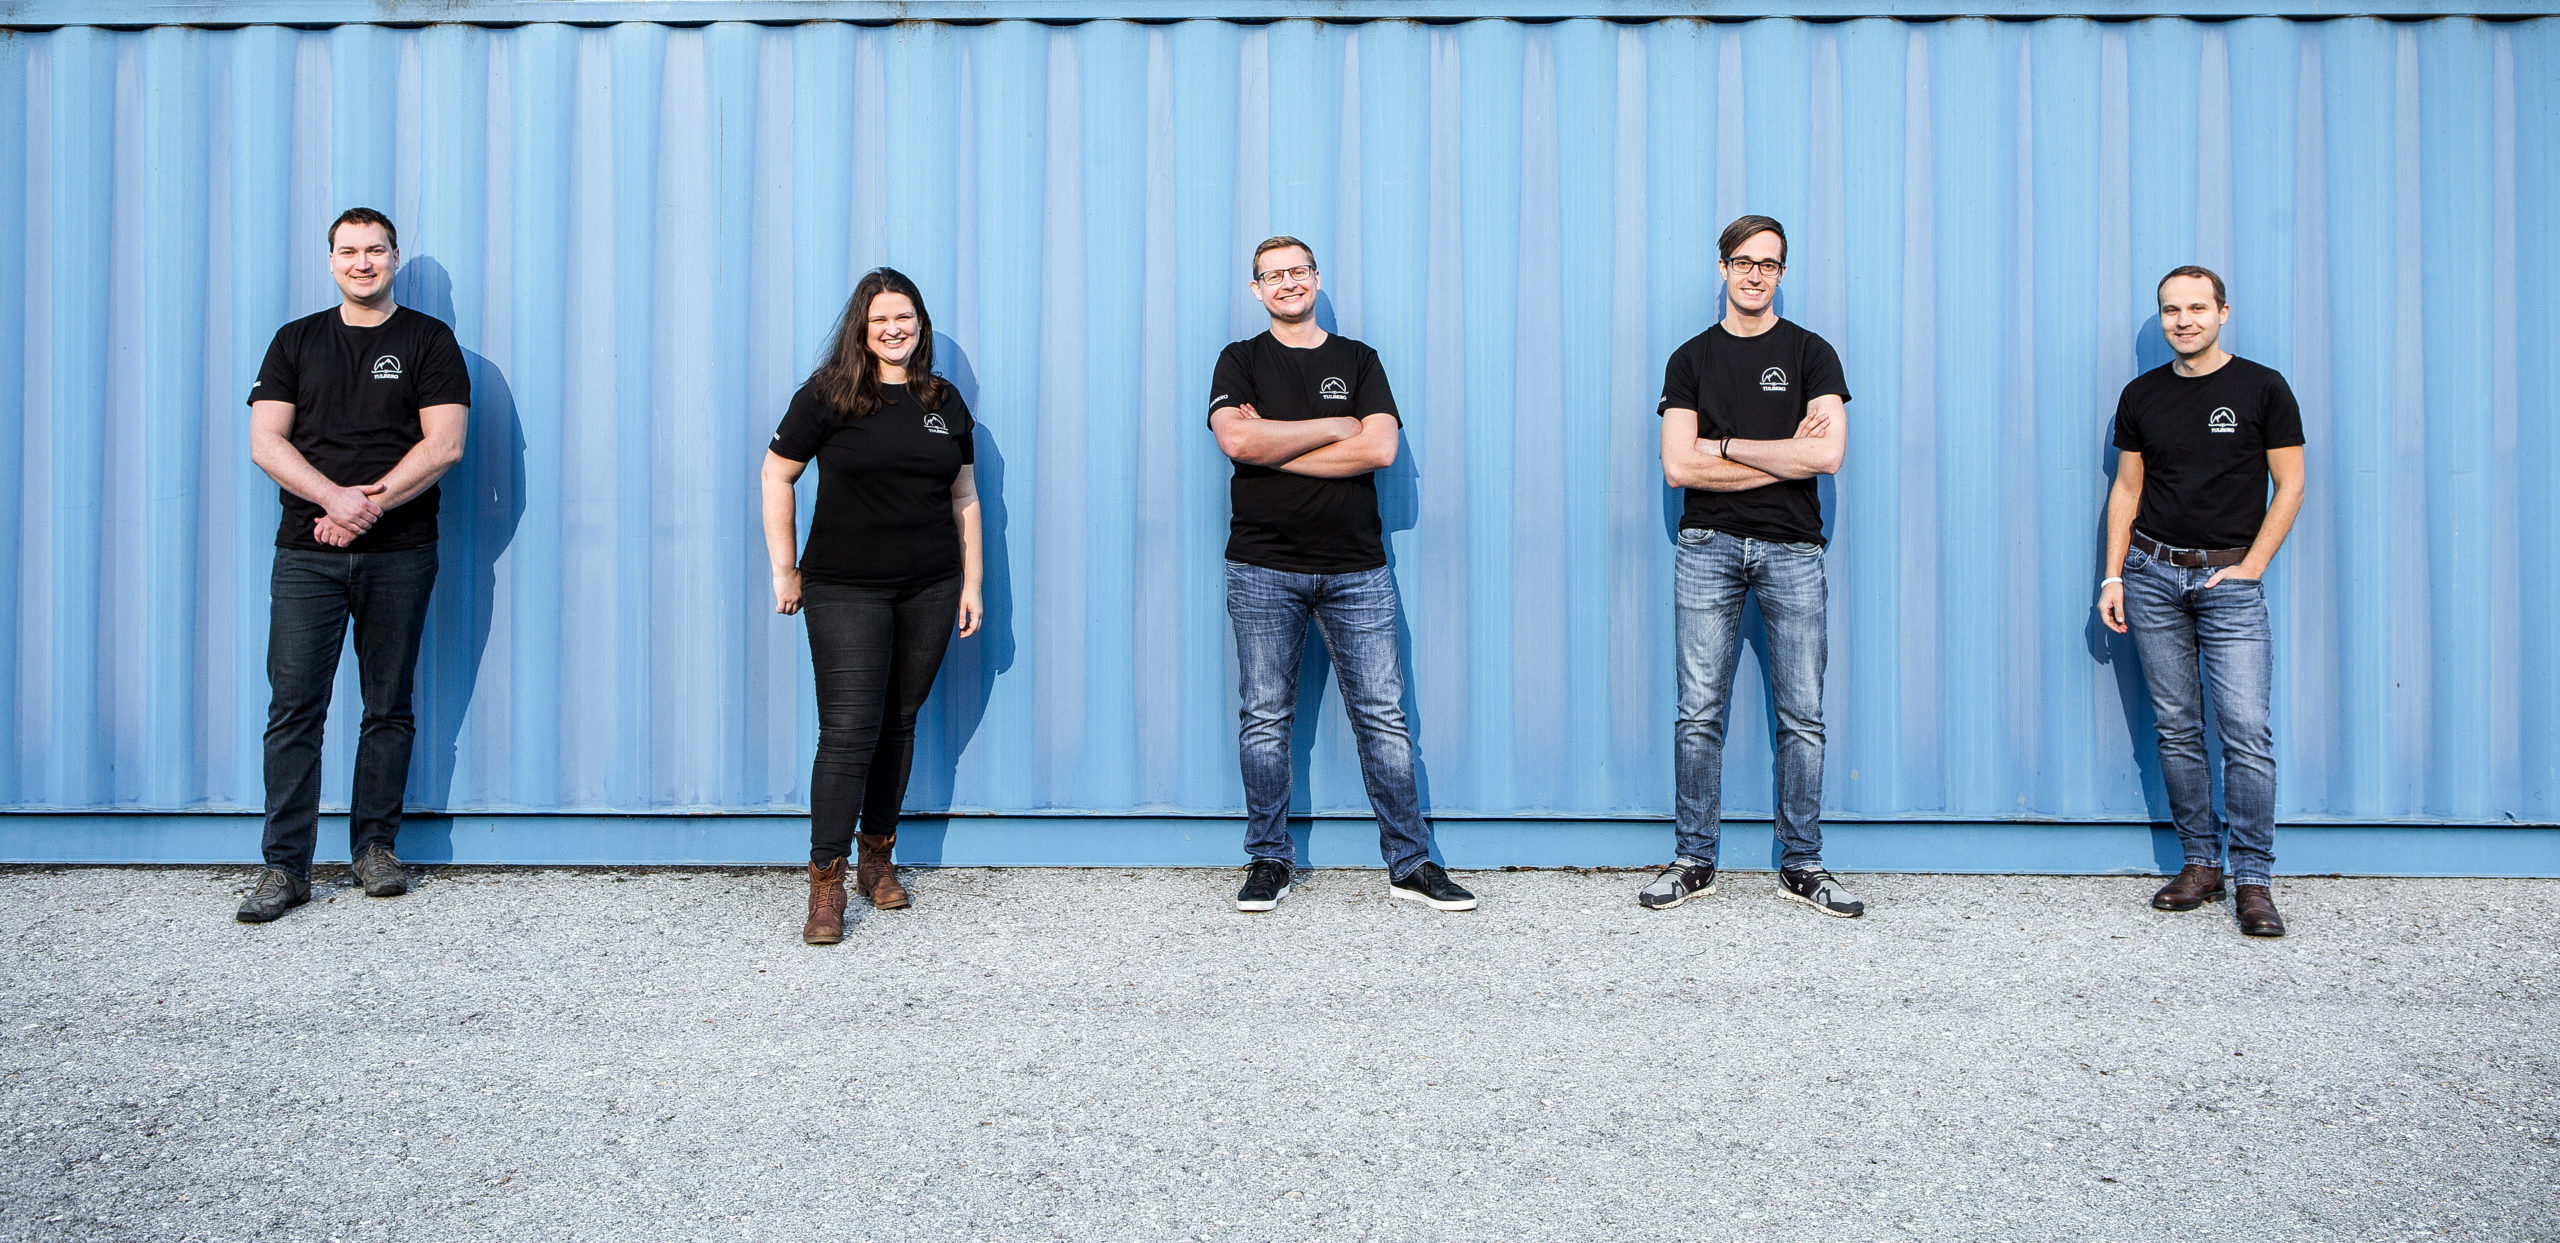 Das Tulberg Team - ihr Team für Anlagen und Maschinen in der Direktvermarktung